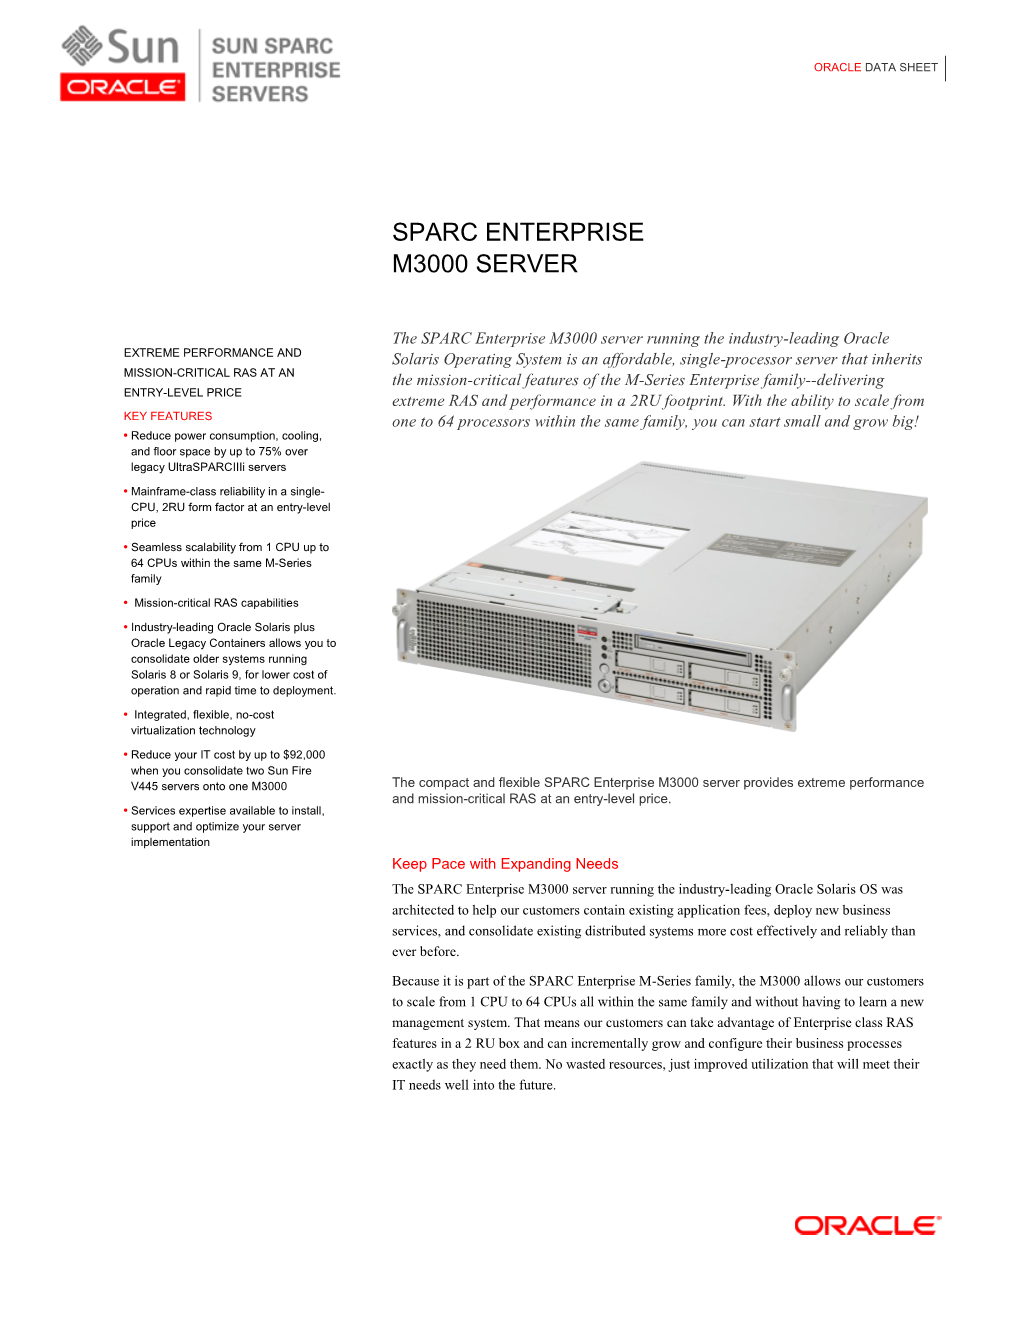 Sparc Enterprise M3000 Server